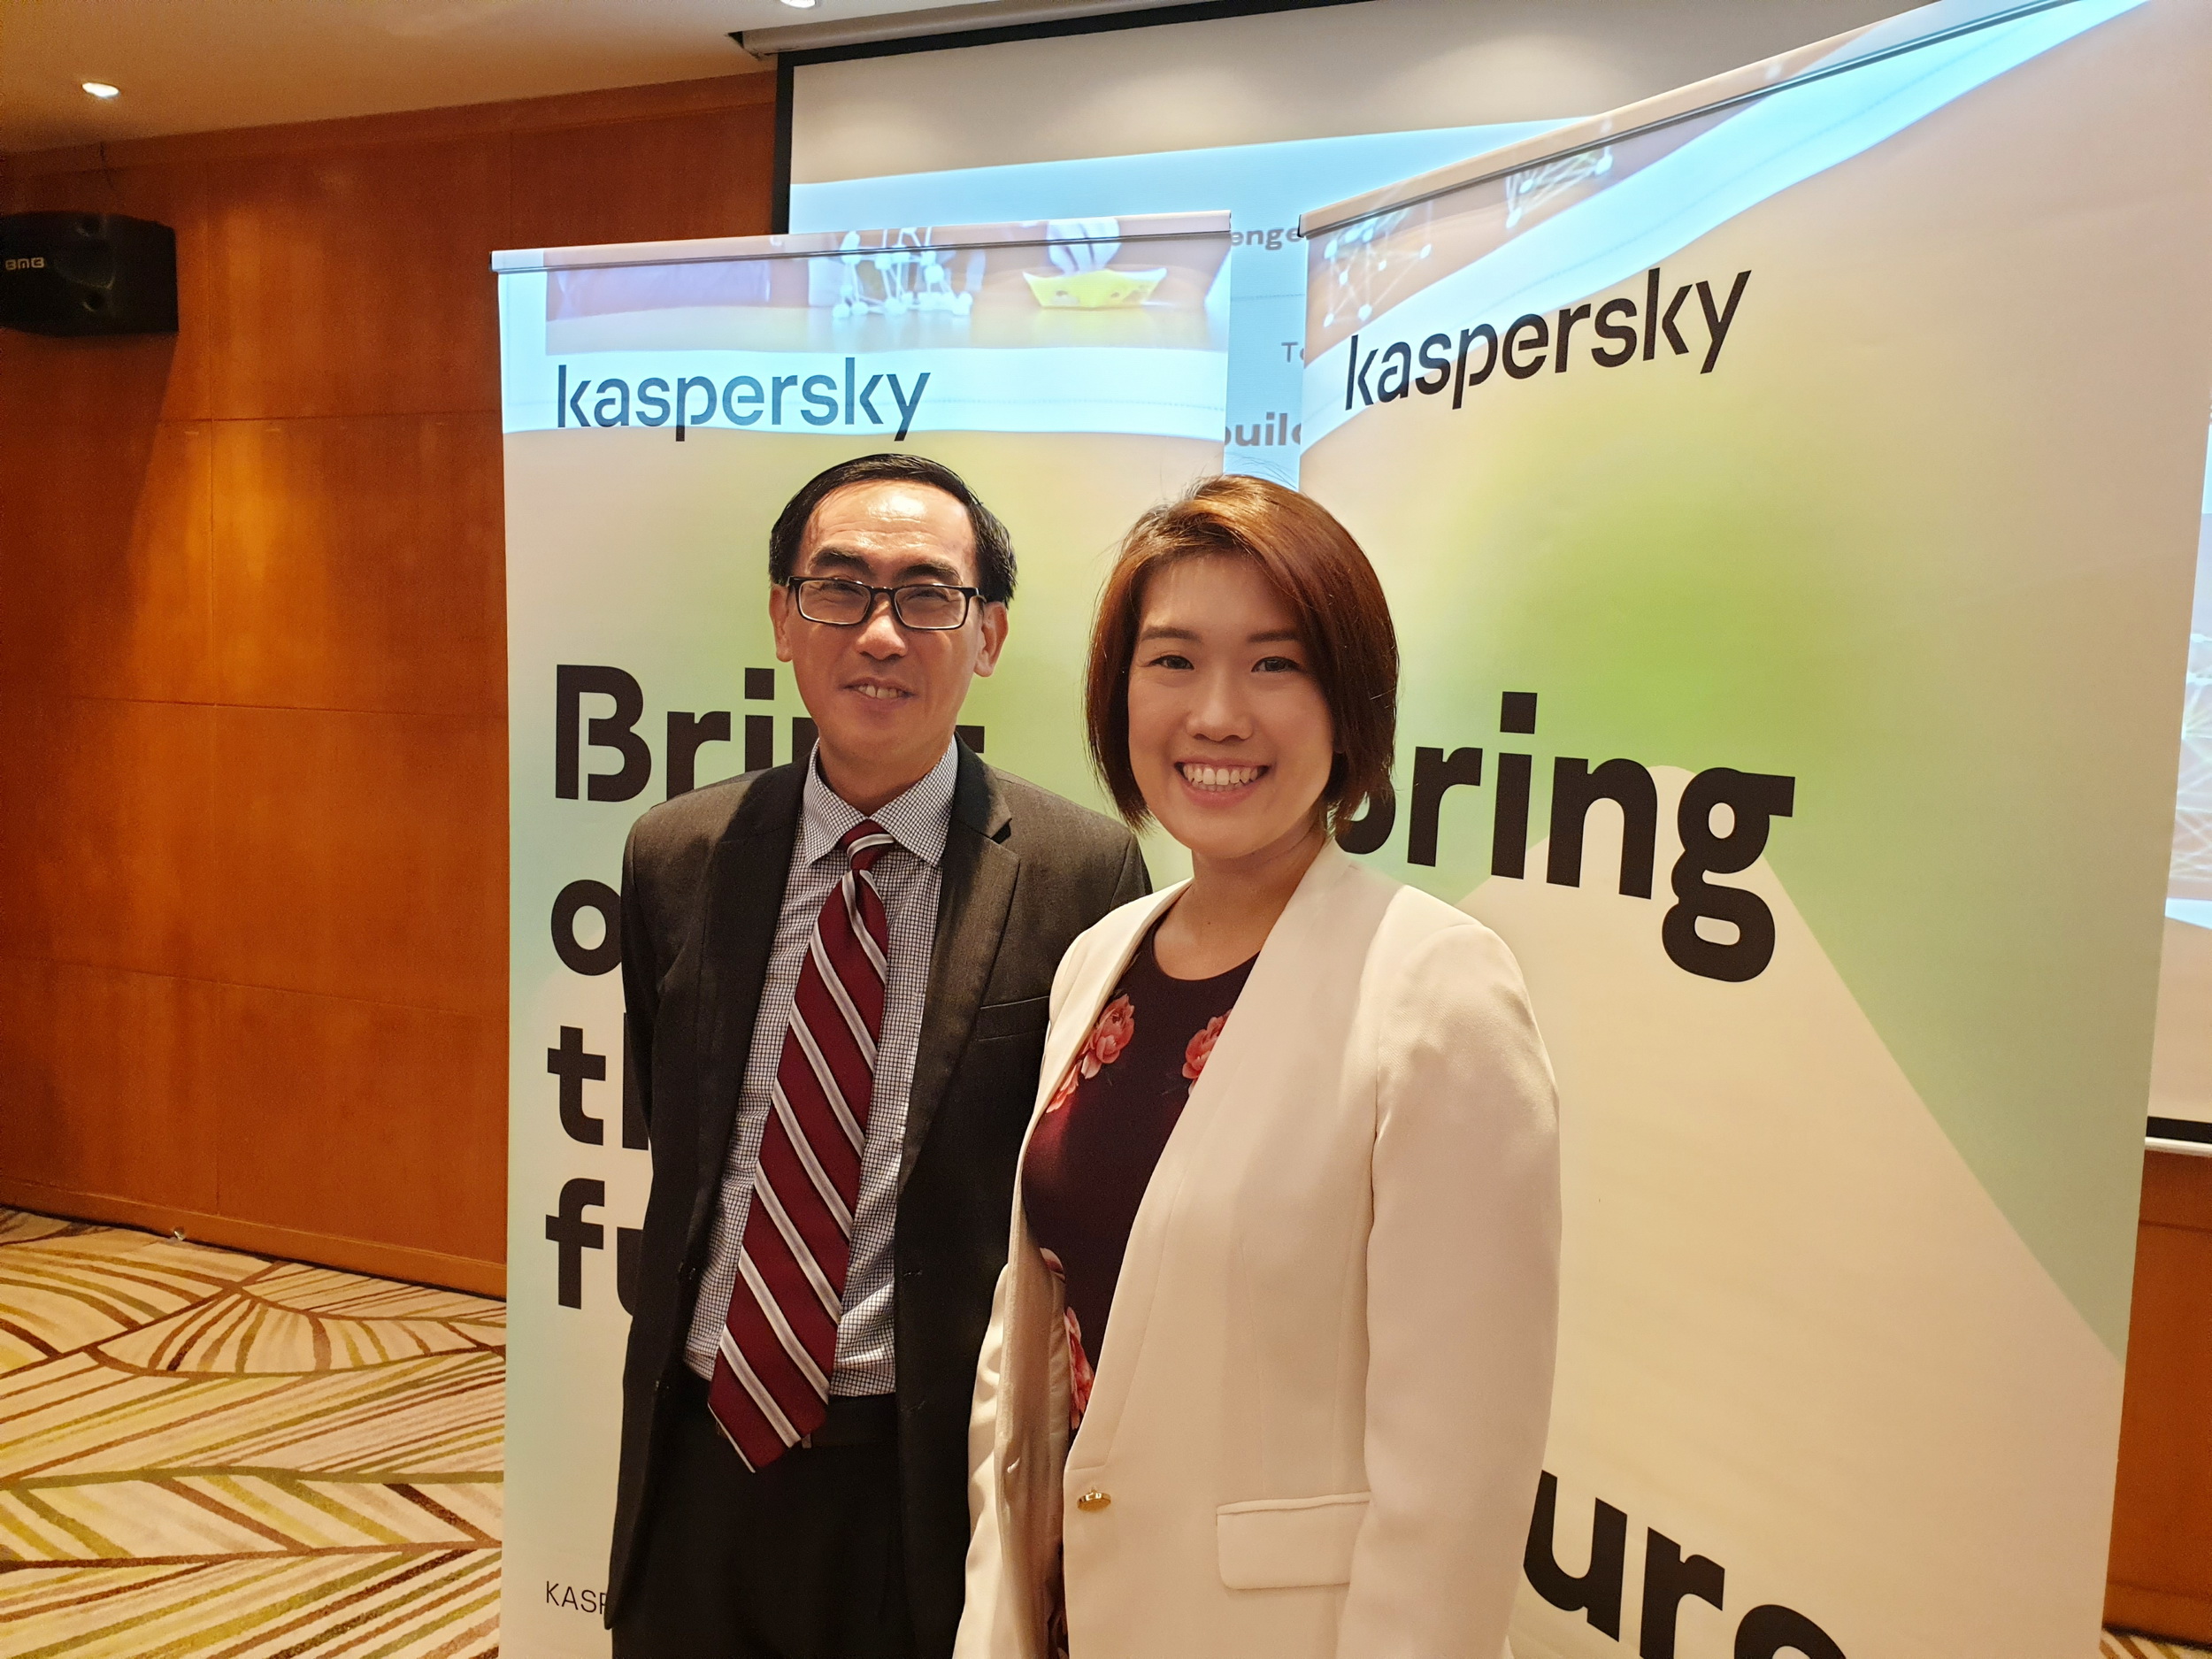 Kaspersky เรียกร้องให้สร้างความยืดหยุ่นทางไซเบอร์ของ ICT supply chain ในไทย เพื่อกระตุ้นเศรษฐกิจดิจิทัลกำลังเติบโต